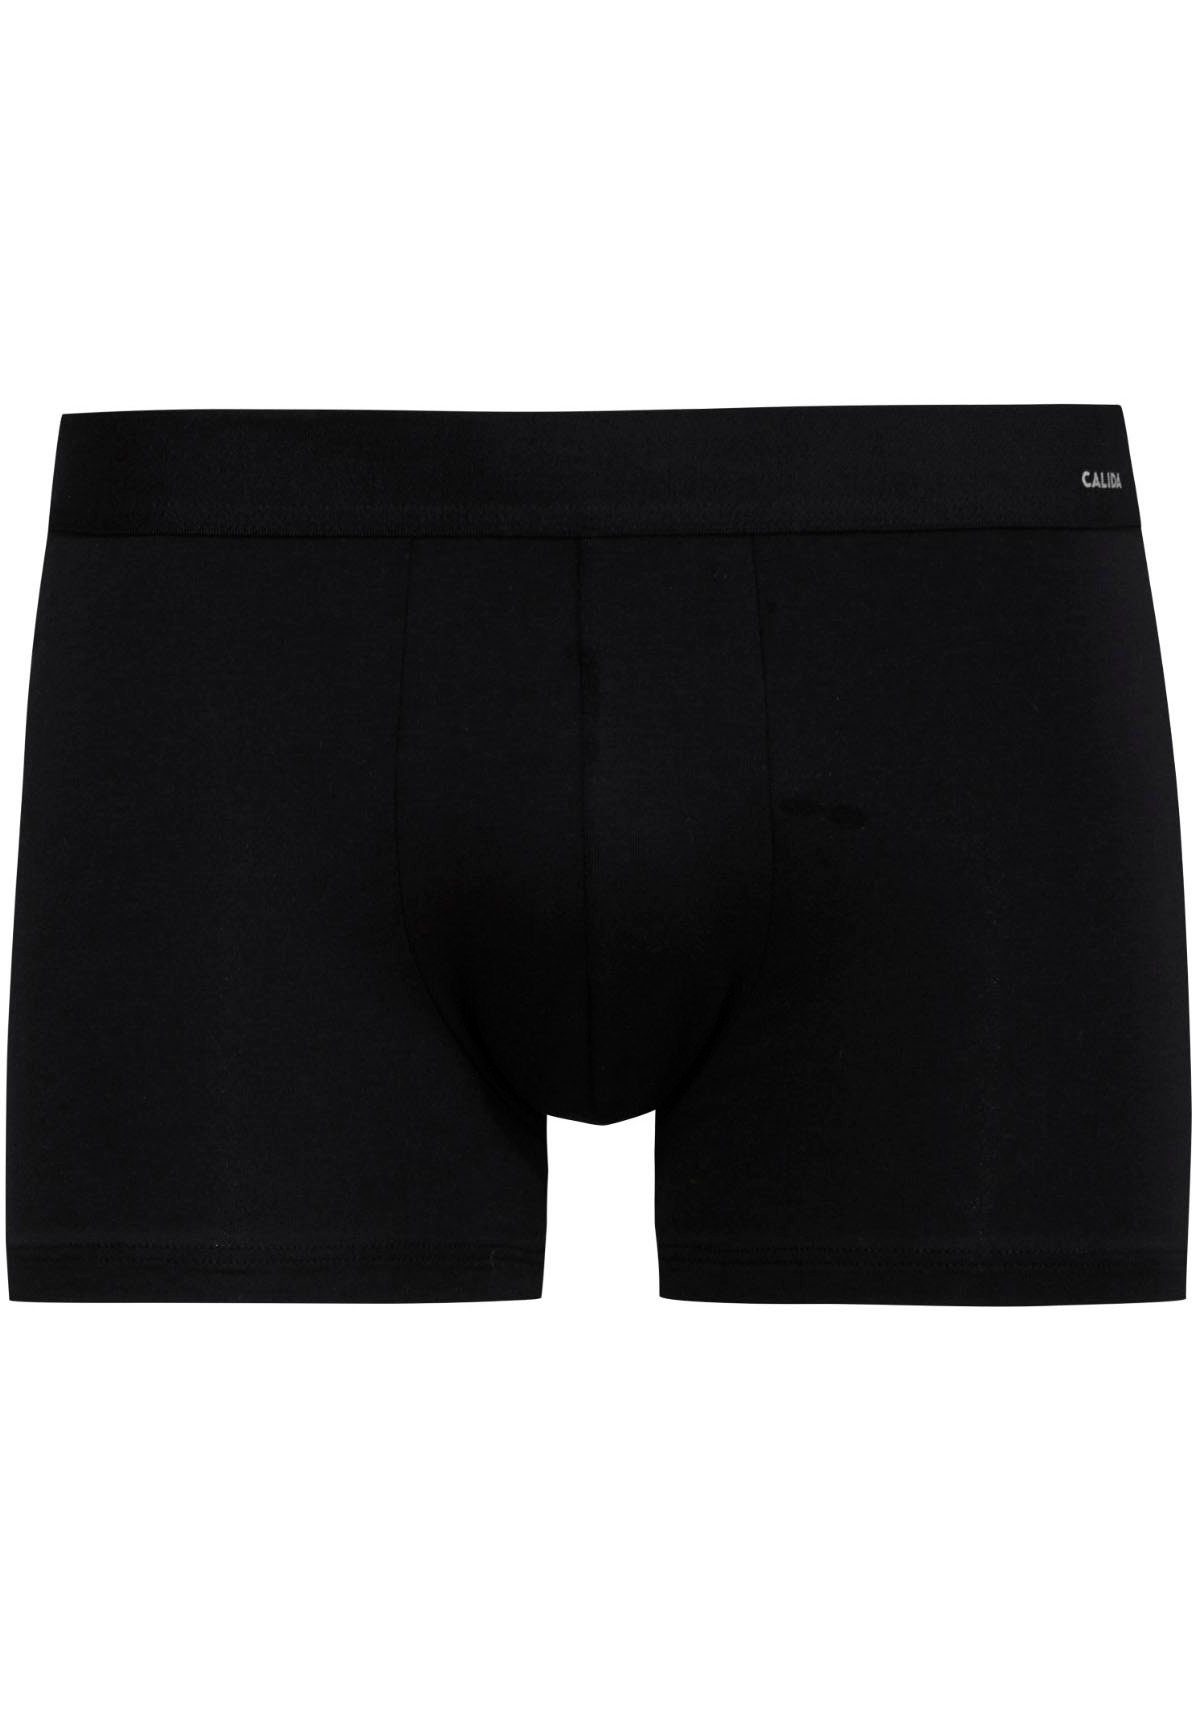 Code Komfortbund Cotton CALIDA Boxershorts elastische Boxer-Brief, schwarz Baumwollmischung,